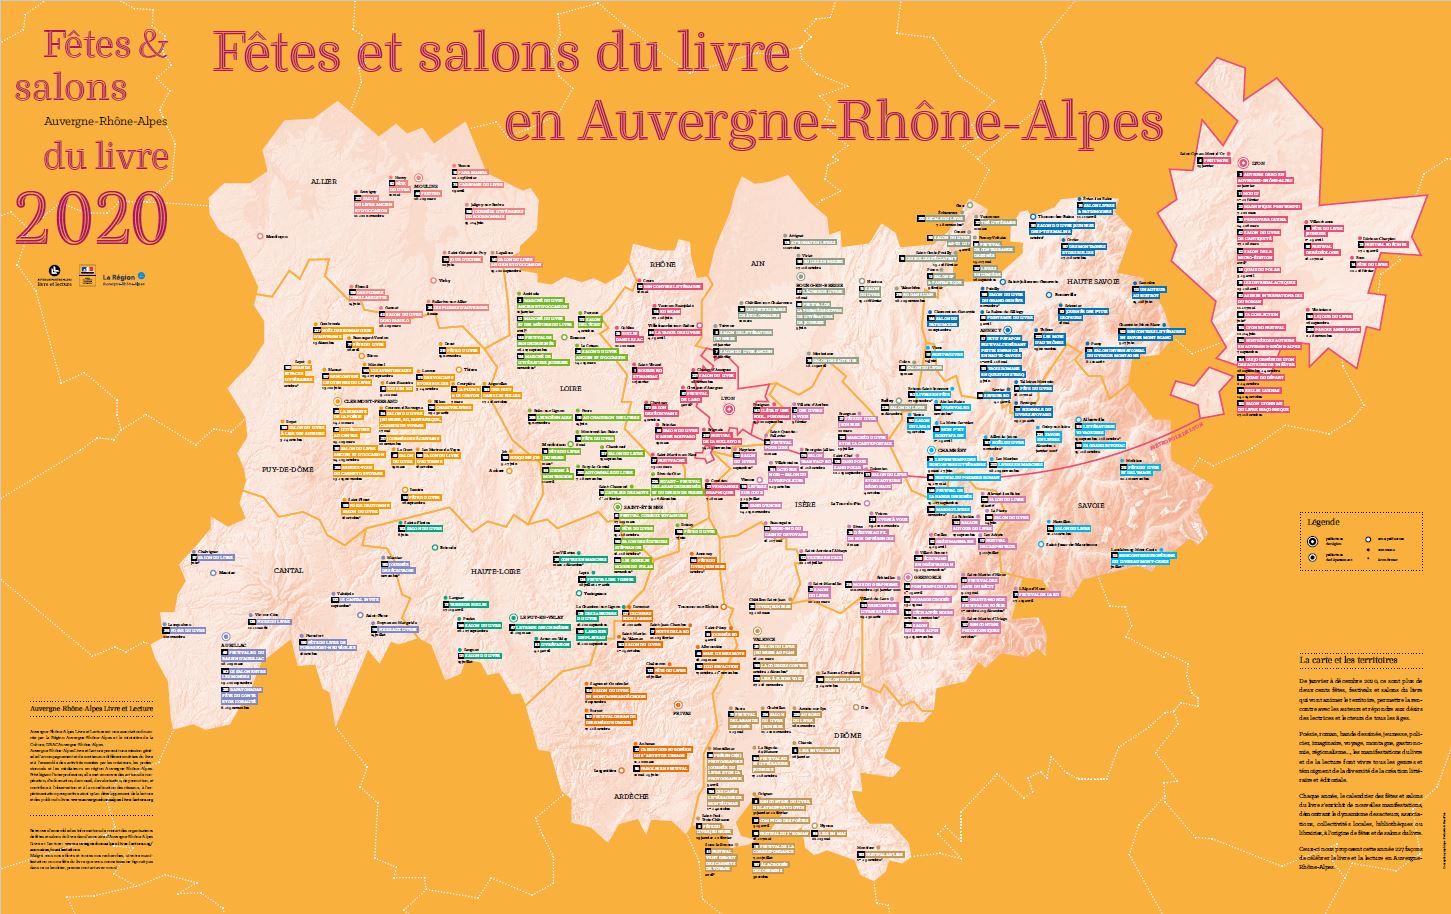 Carte régionale des fêtes et salons du livre 2020 - Auvergne-Rhône-Alpes